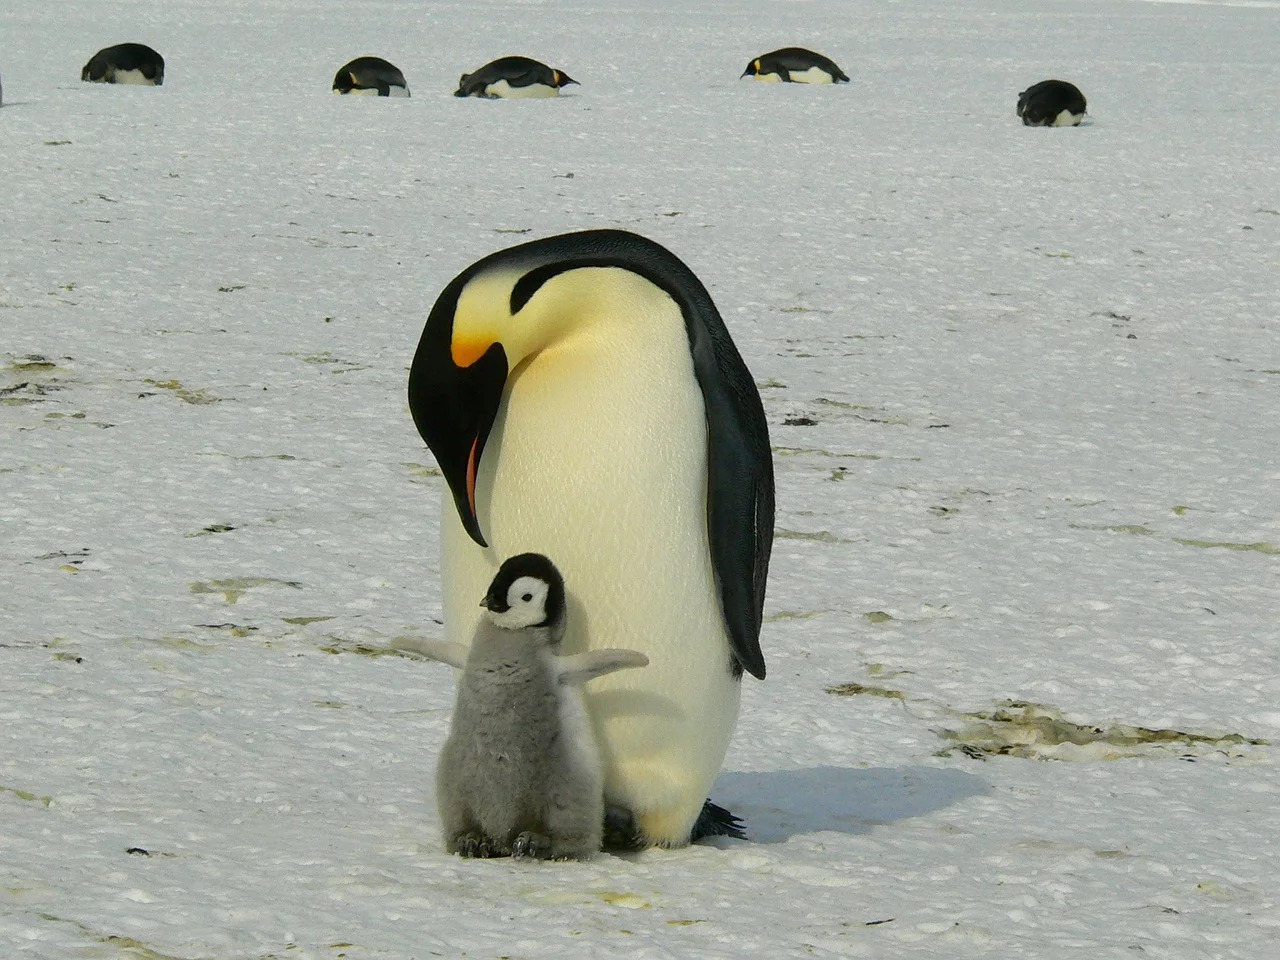 Burung penguin dapat berenang menggunakan